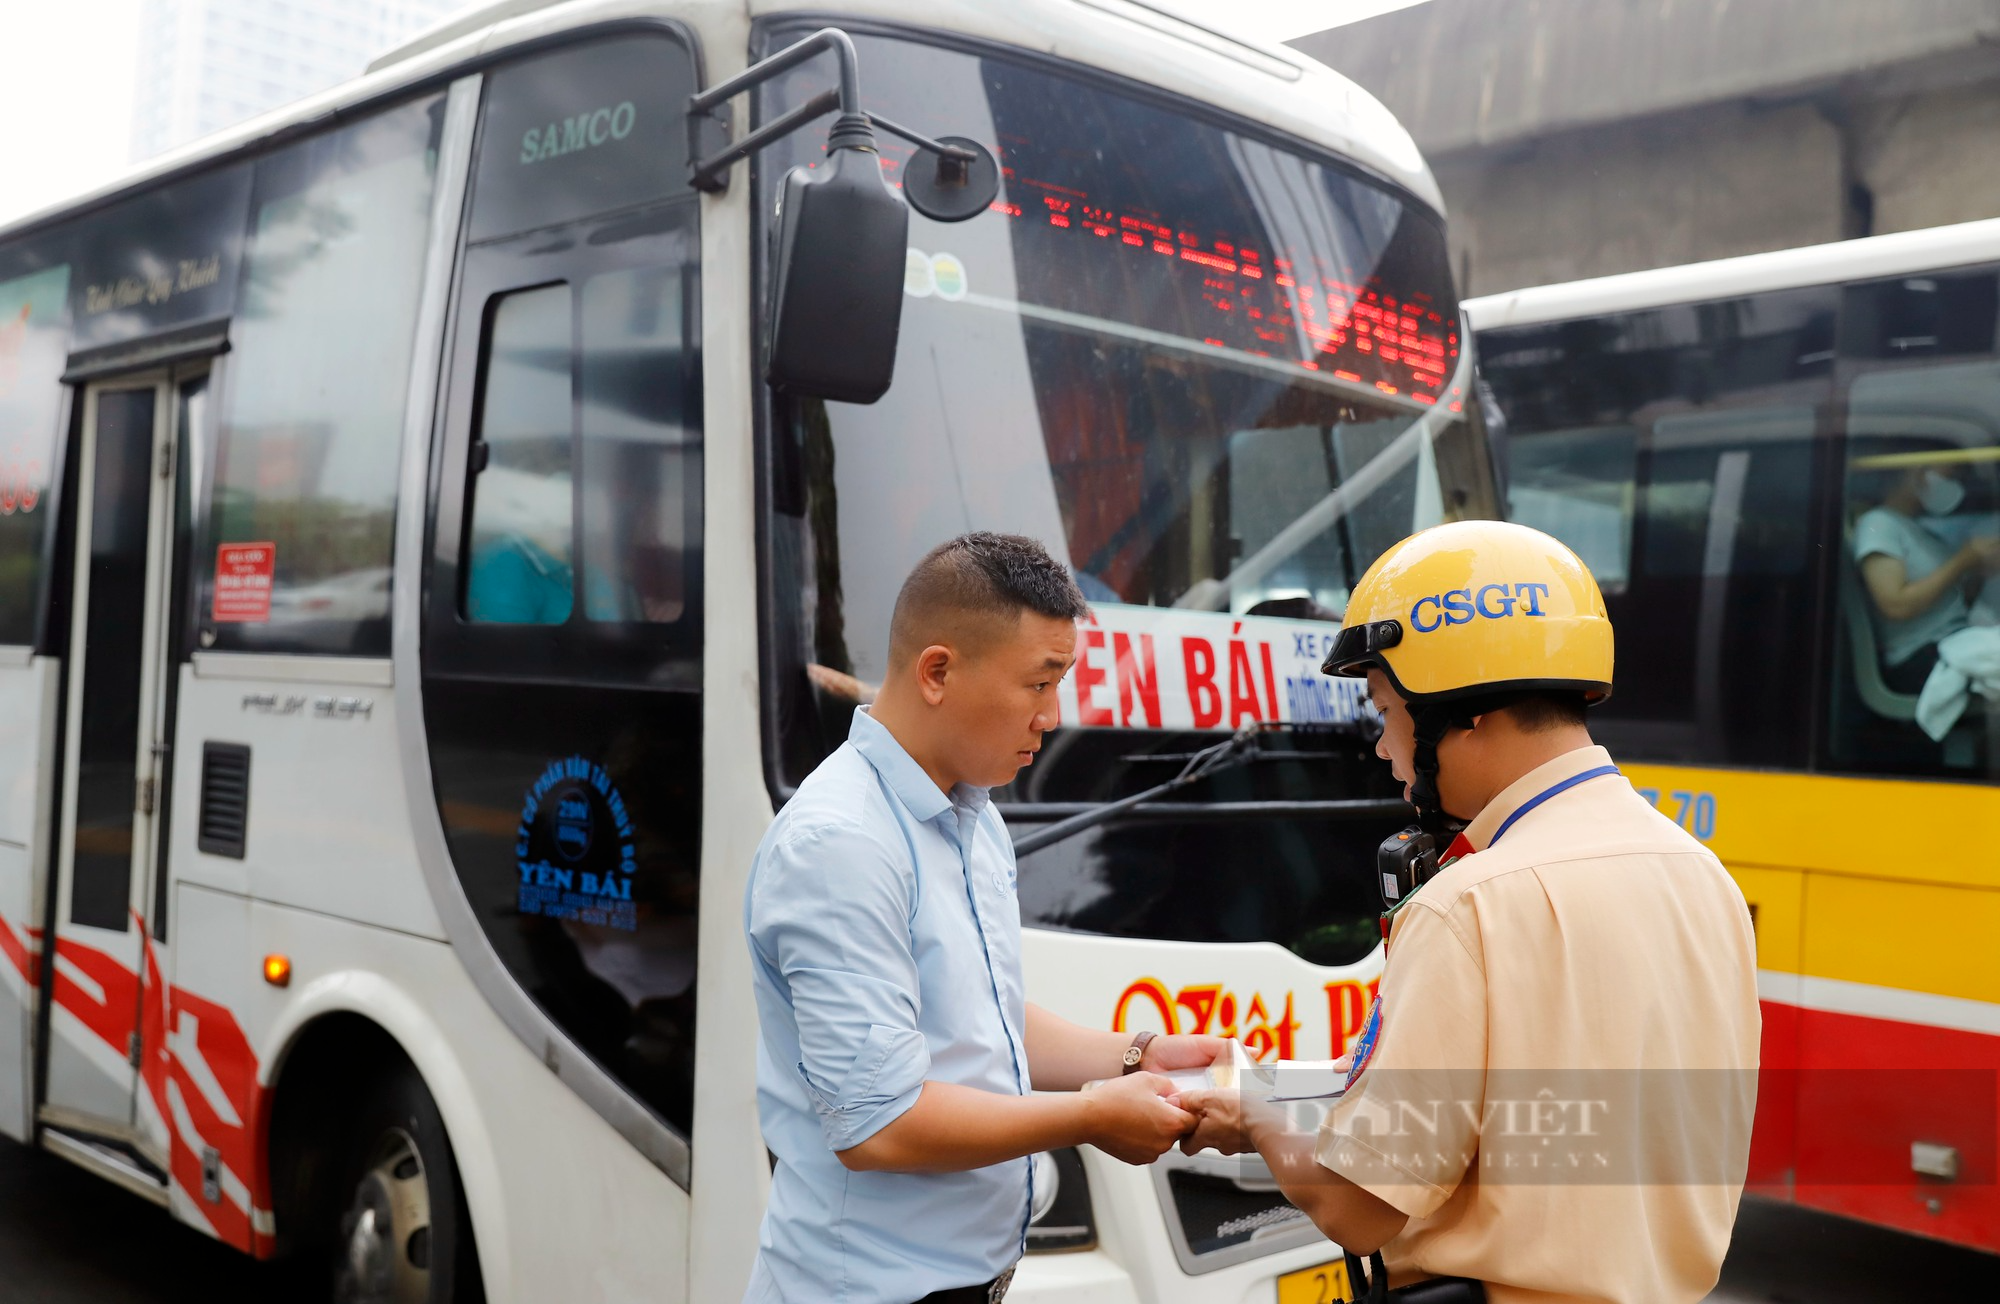 Sau phản ánh của Báo Dân Việt, CSGT Hà Nội tiếp tục xử lý hàng loạt xe khách vi phạm - Ảnh 6.